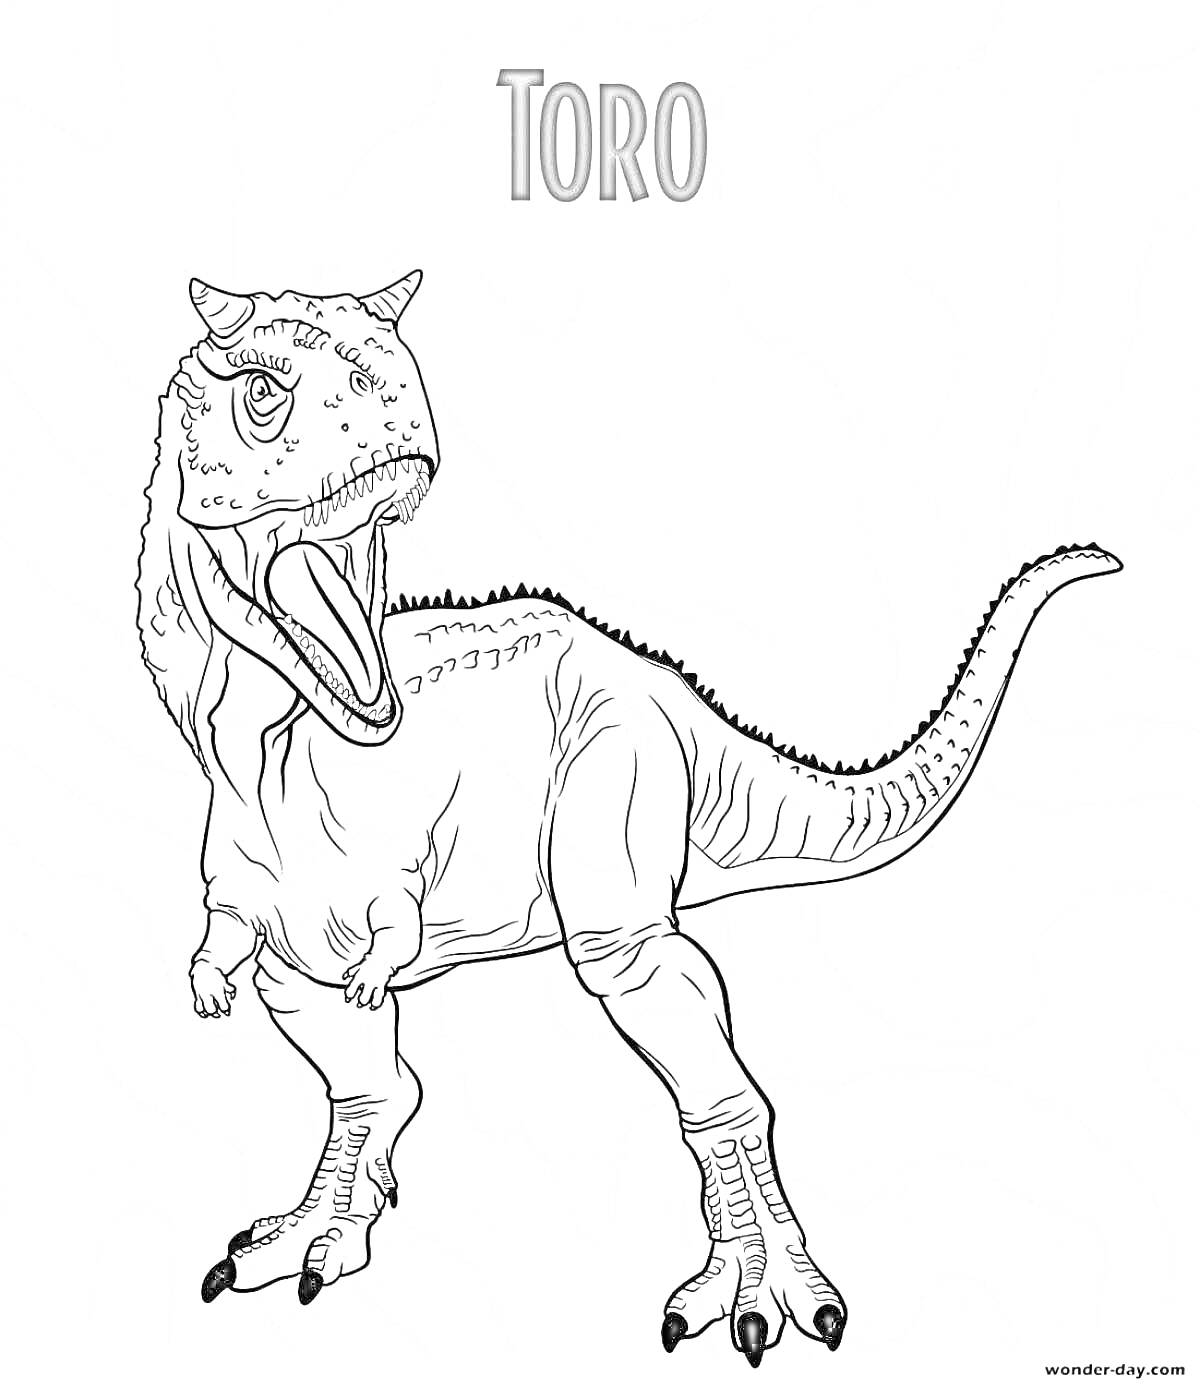 Раскраска Динозавр Торo рядом с его названием